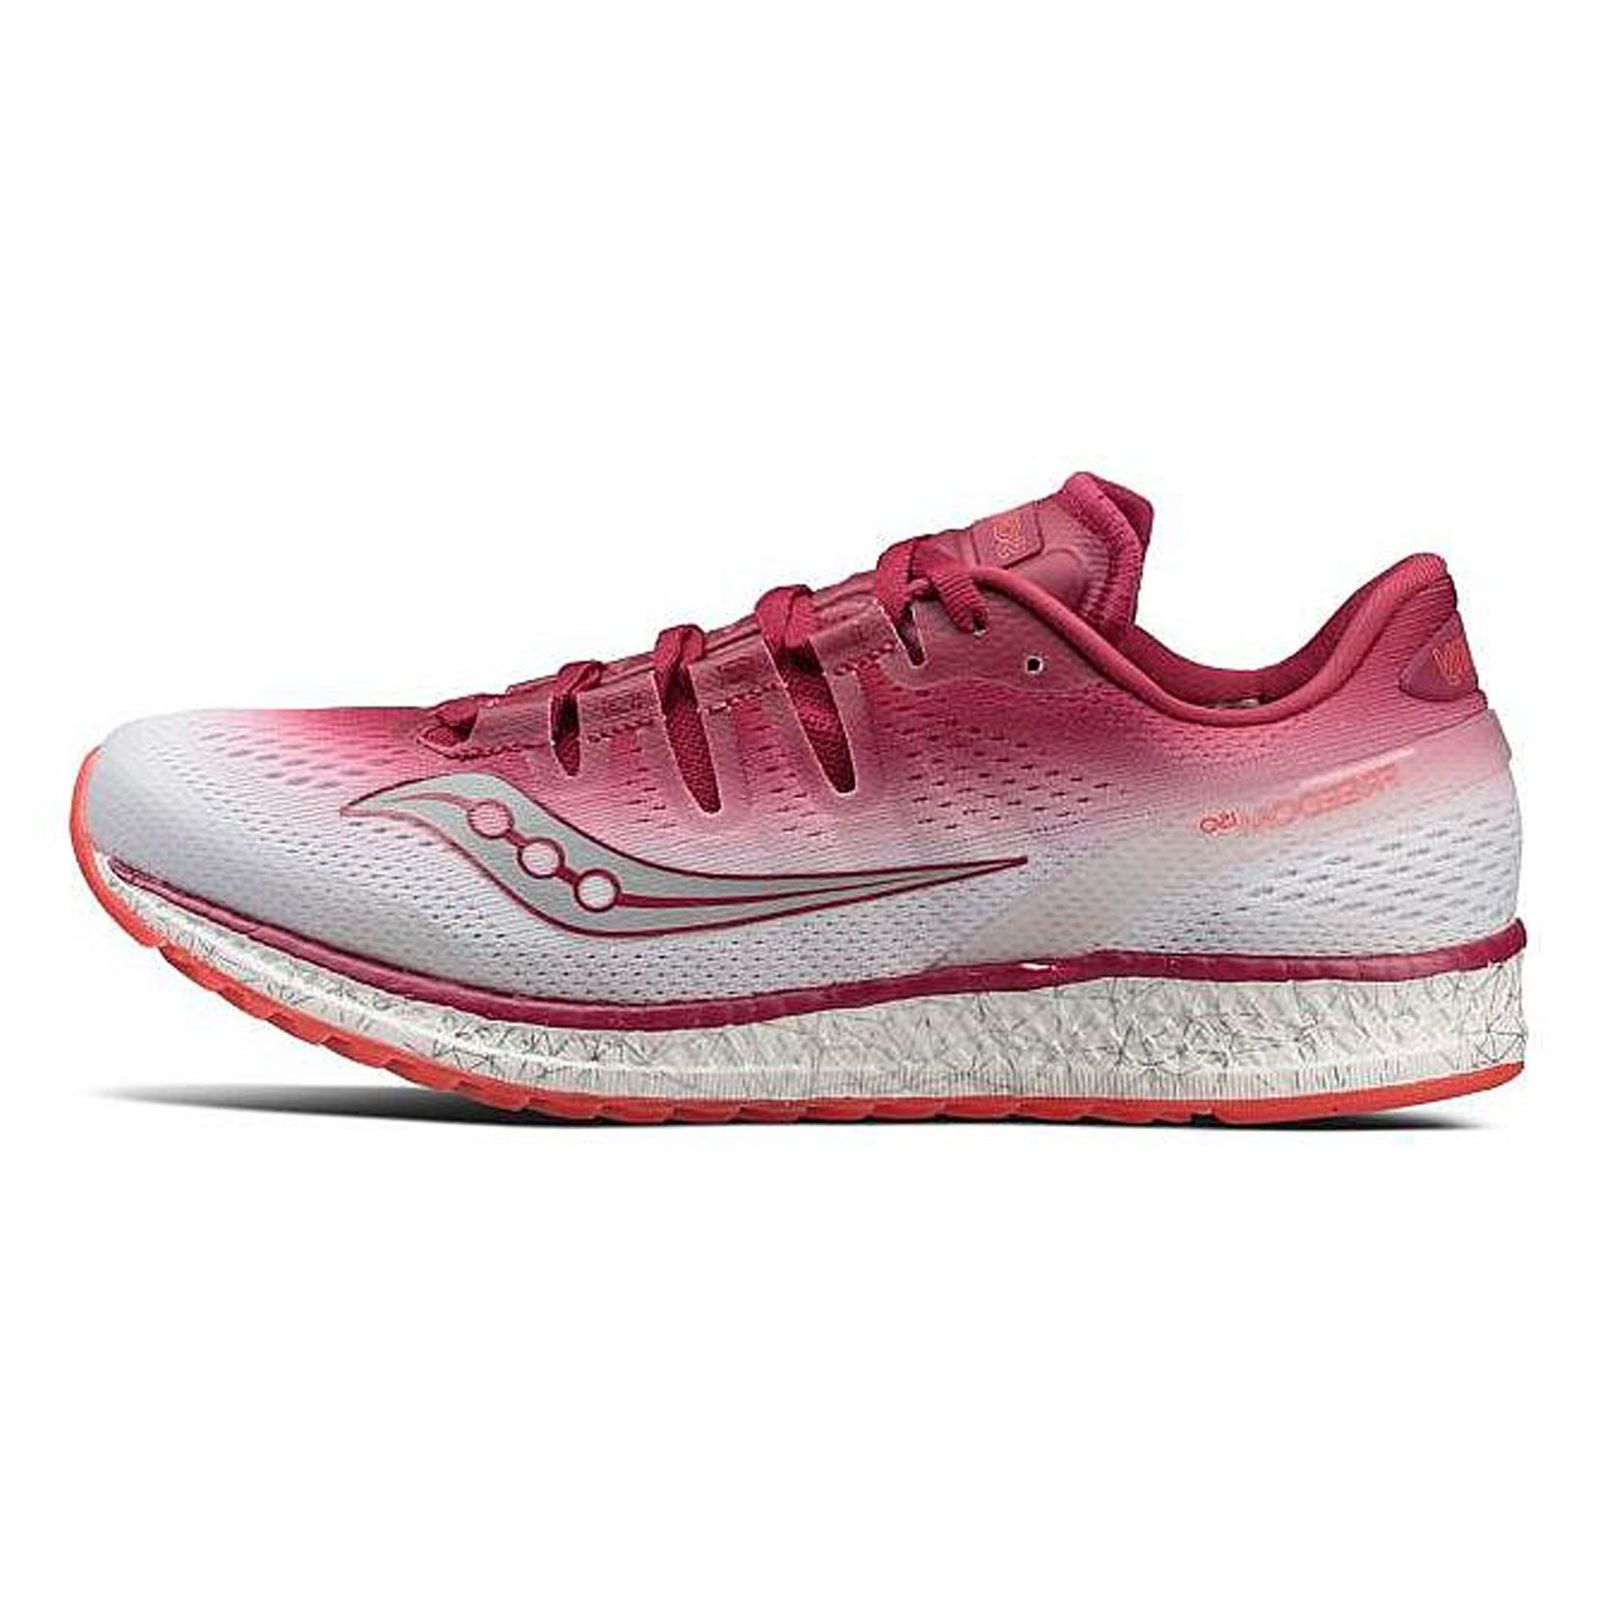 کفش مخصوص دویدن زنانه ساکنی مدل Freedom Iso کد S10355-5 -  - 2